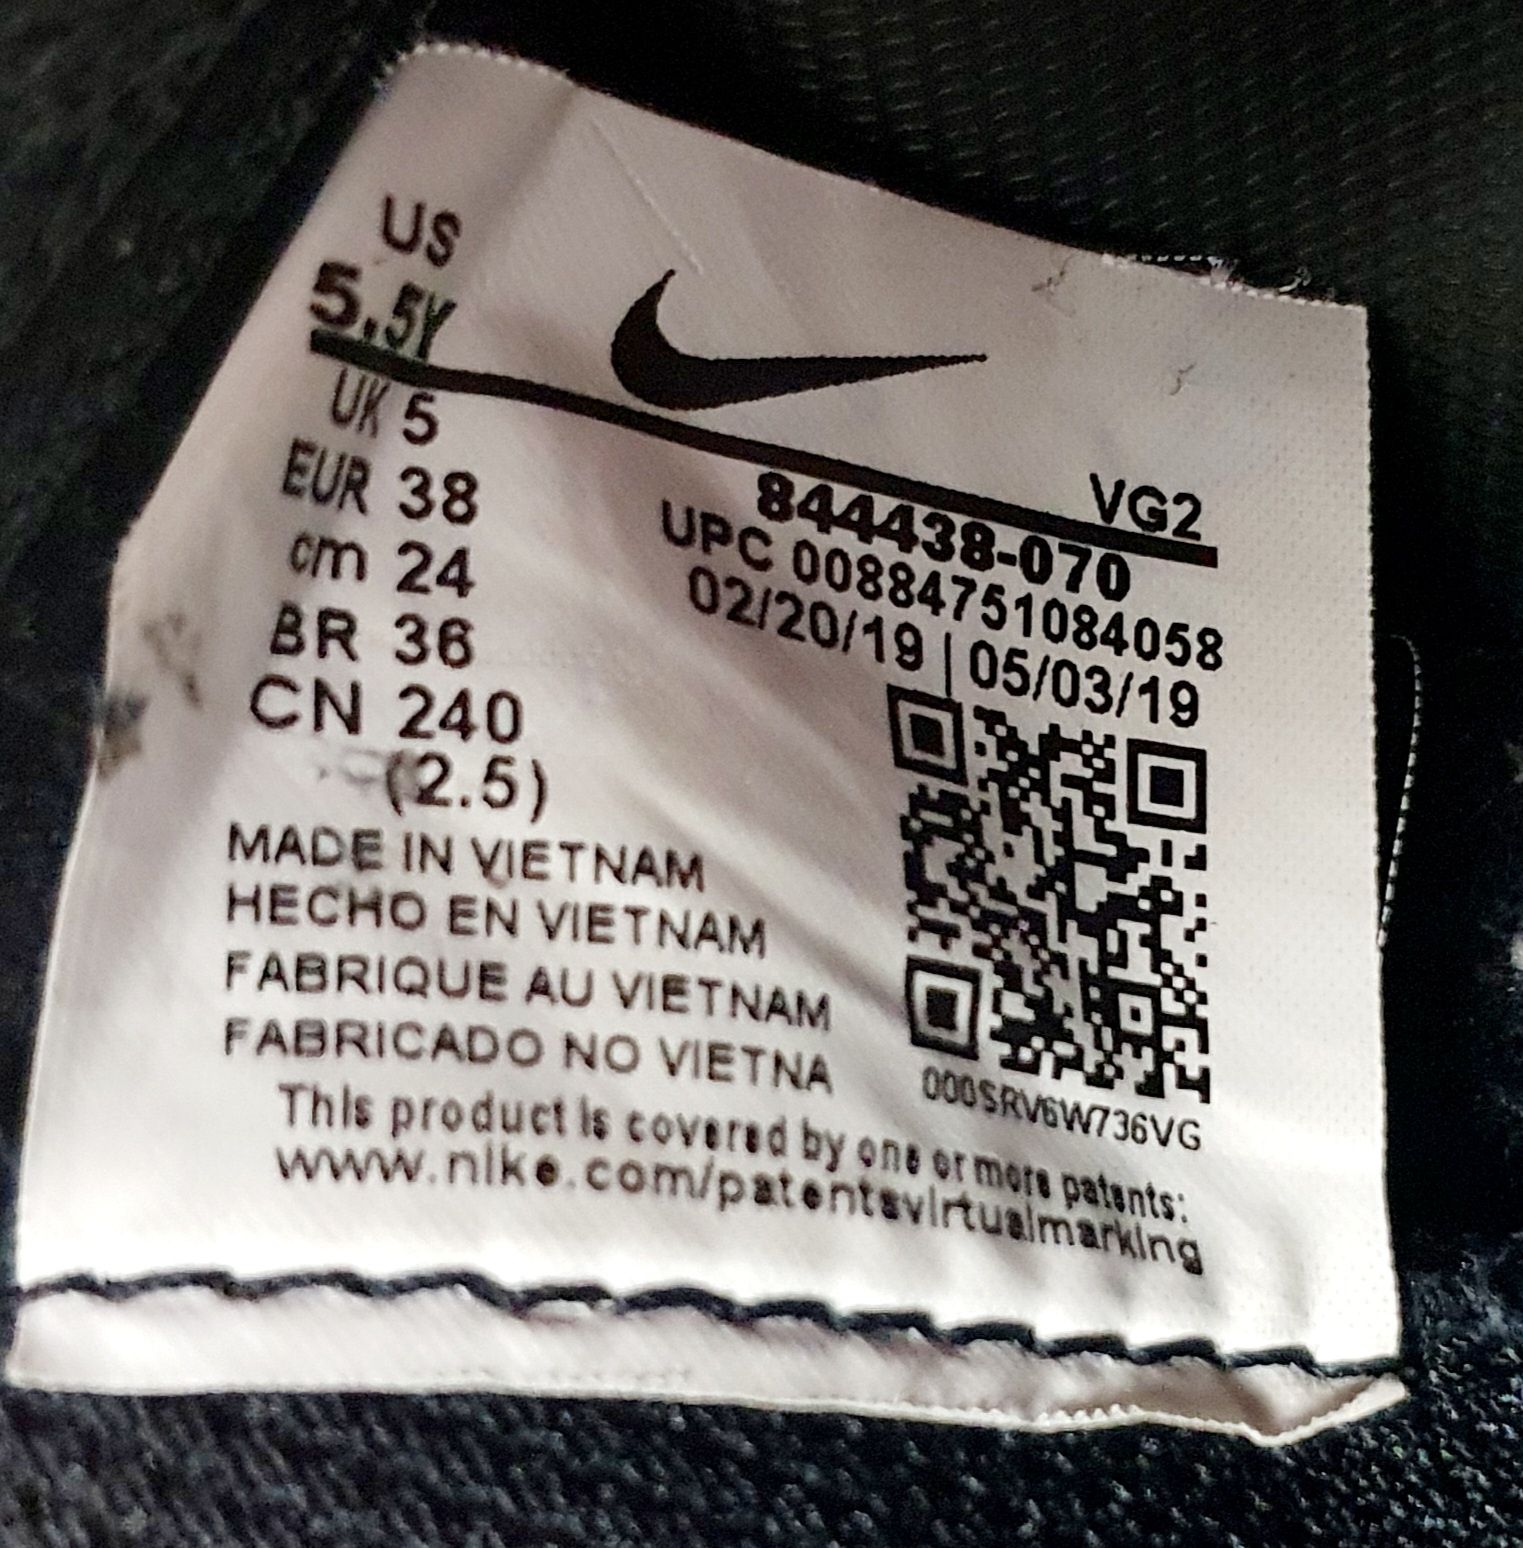 Adidasi Nike Mercurial Bravatax JR originali 38 ghete fotbal sala